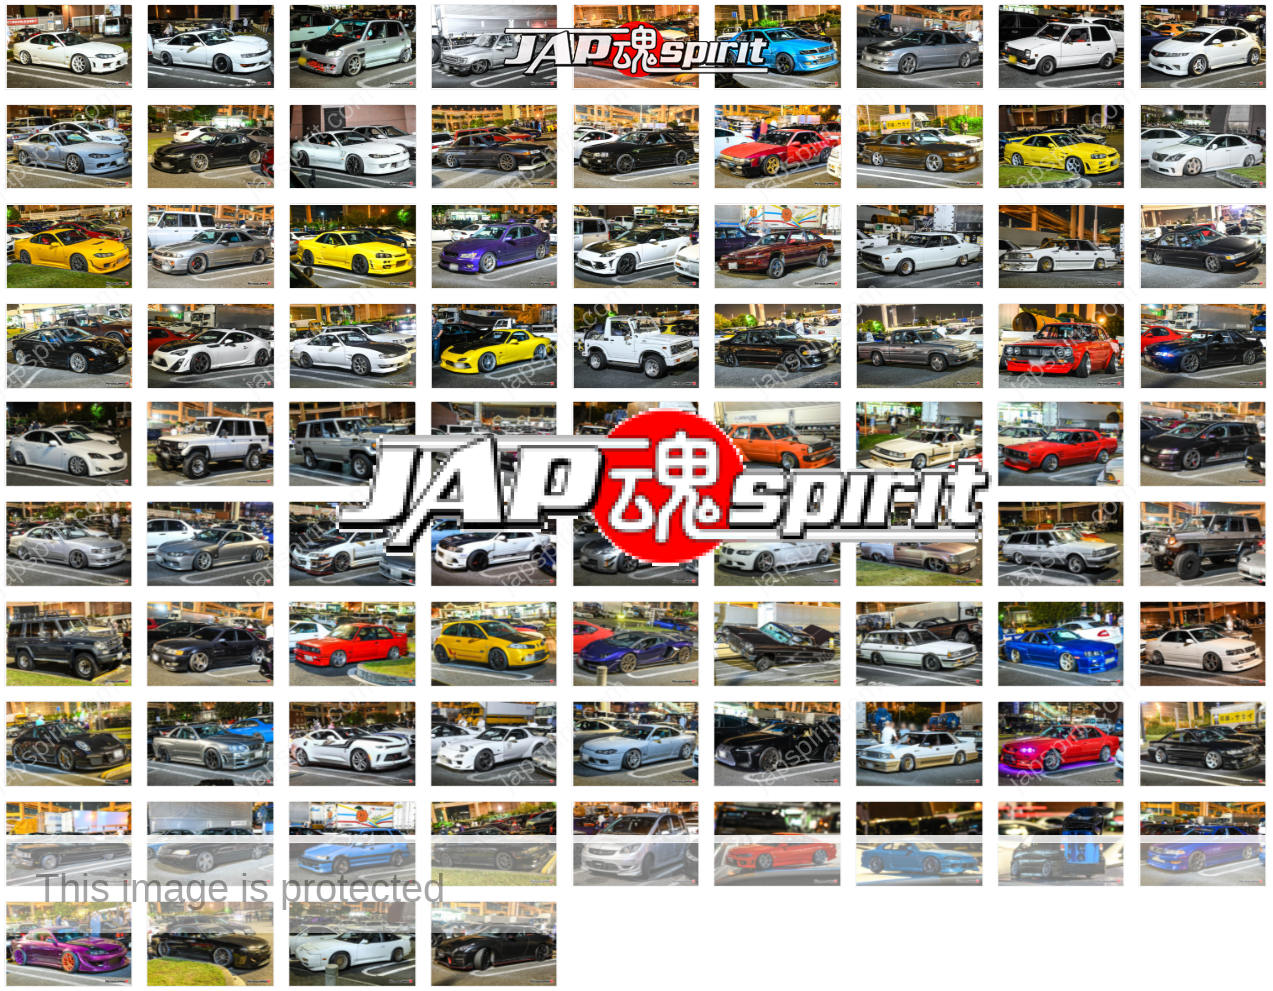 daikoku-pa-cool-car-report-2020-10-02-daikokupa-daikokuparking-jdm-e5a4a7e9bb92pa-e383ace3839de383bce38388-86